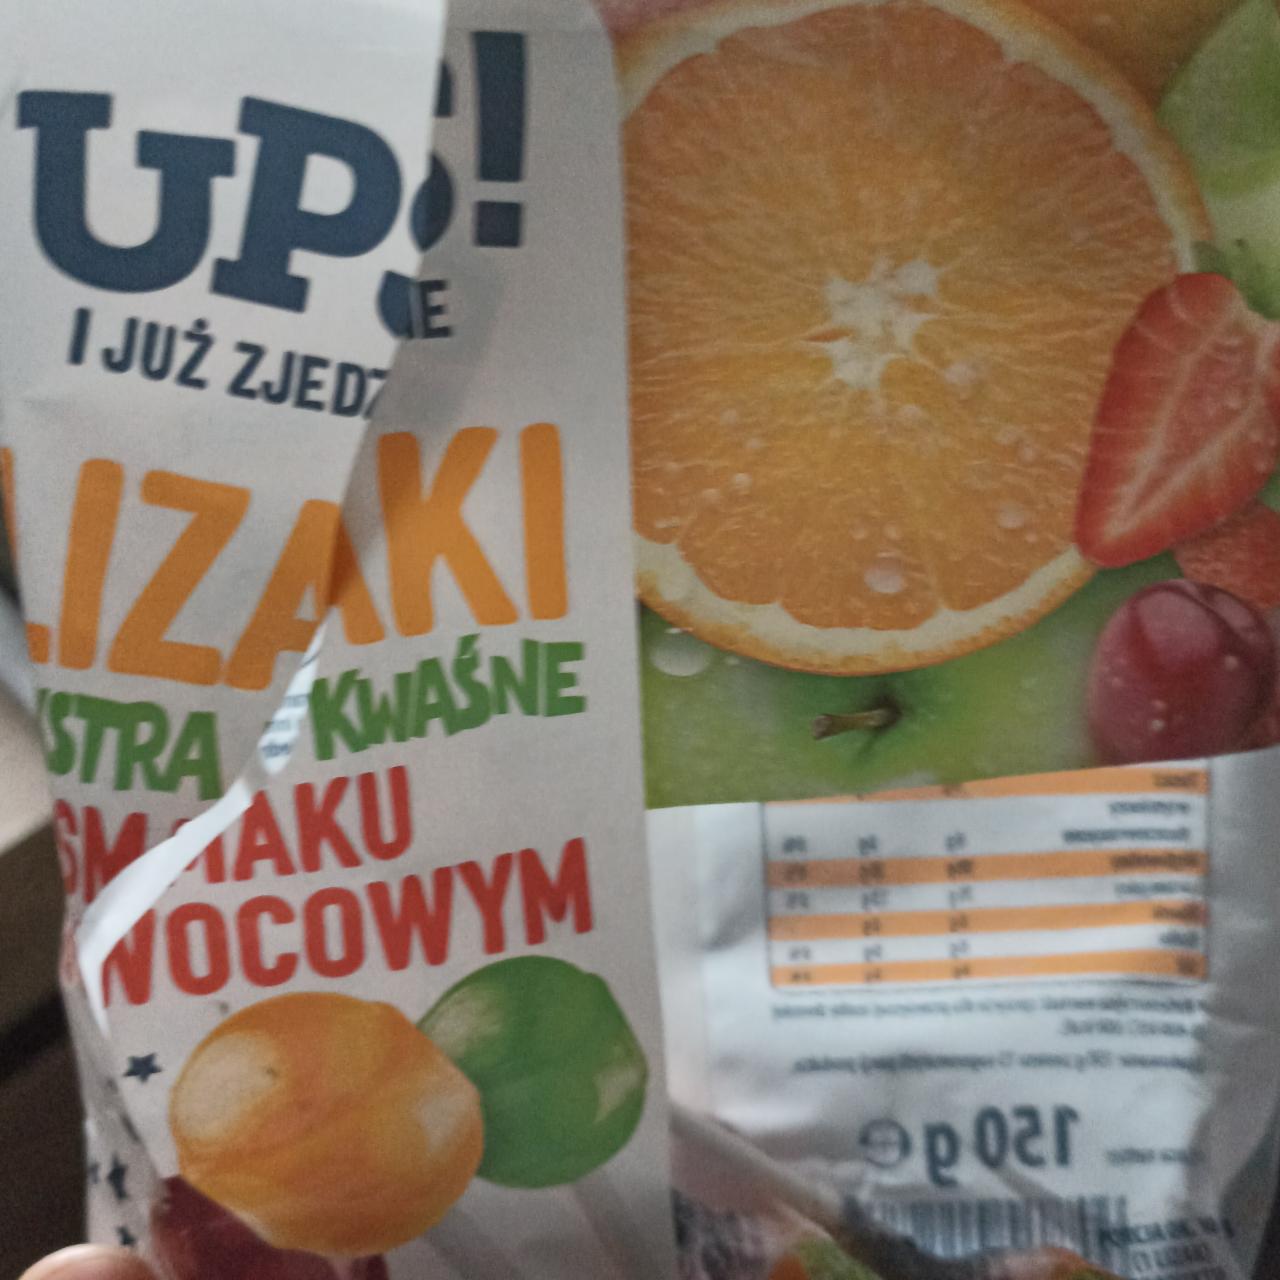 Zdjęcia - ekstra kwaśne lizaki o smaku owocowym UPS!